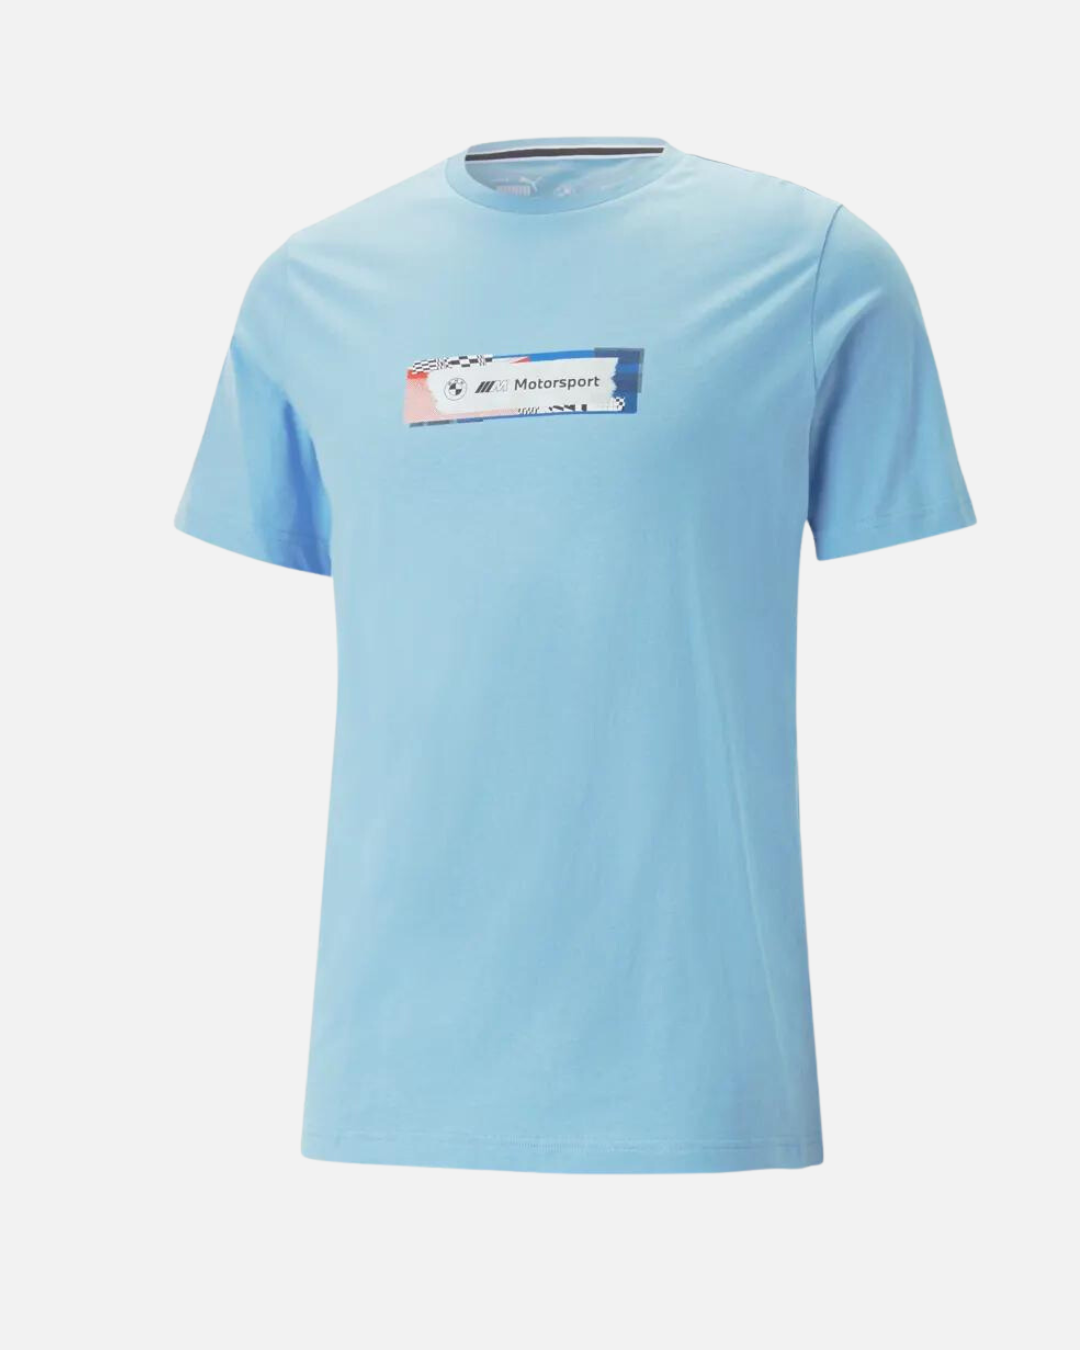 Puma BMW Motorsport Statement Blue – T-shirt - Footkorner